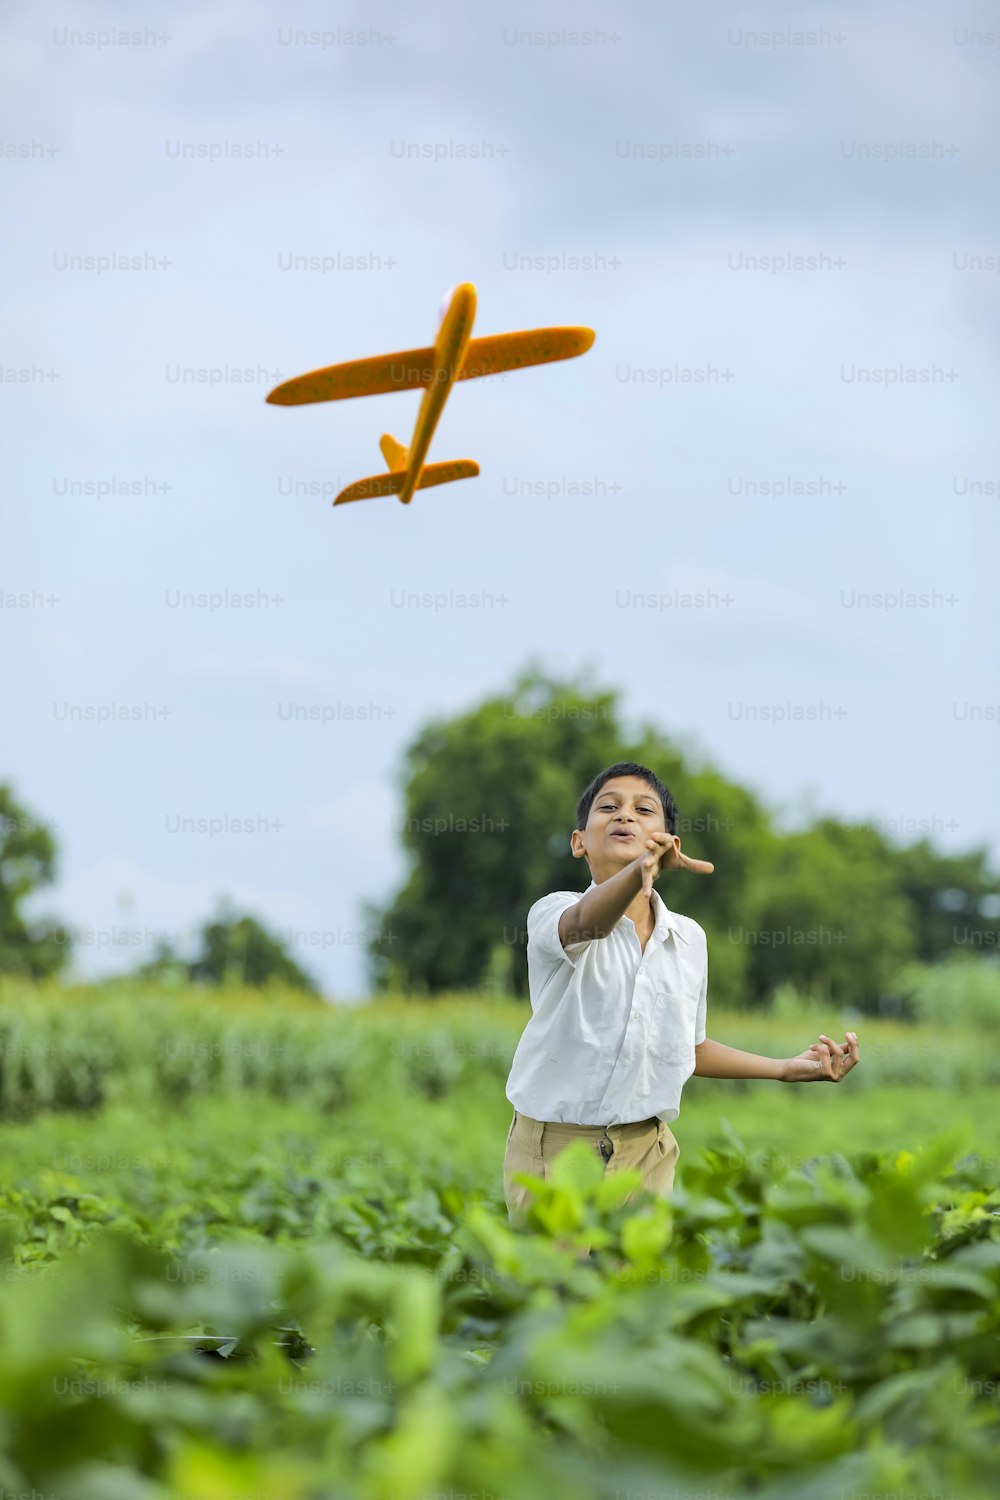 飛行の夢!グリーンフィールドでおもちゃの飛行機で遊ぶインドの子ども